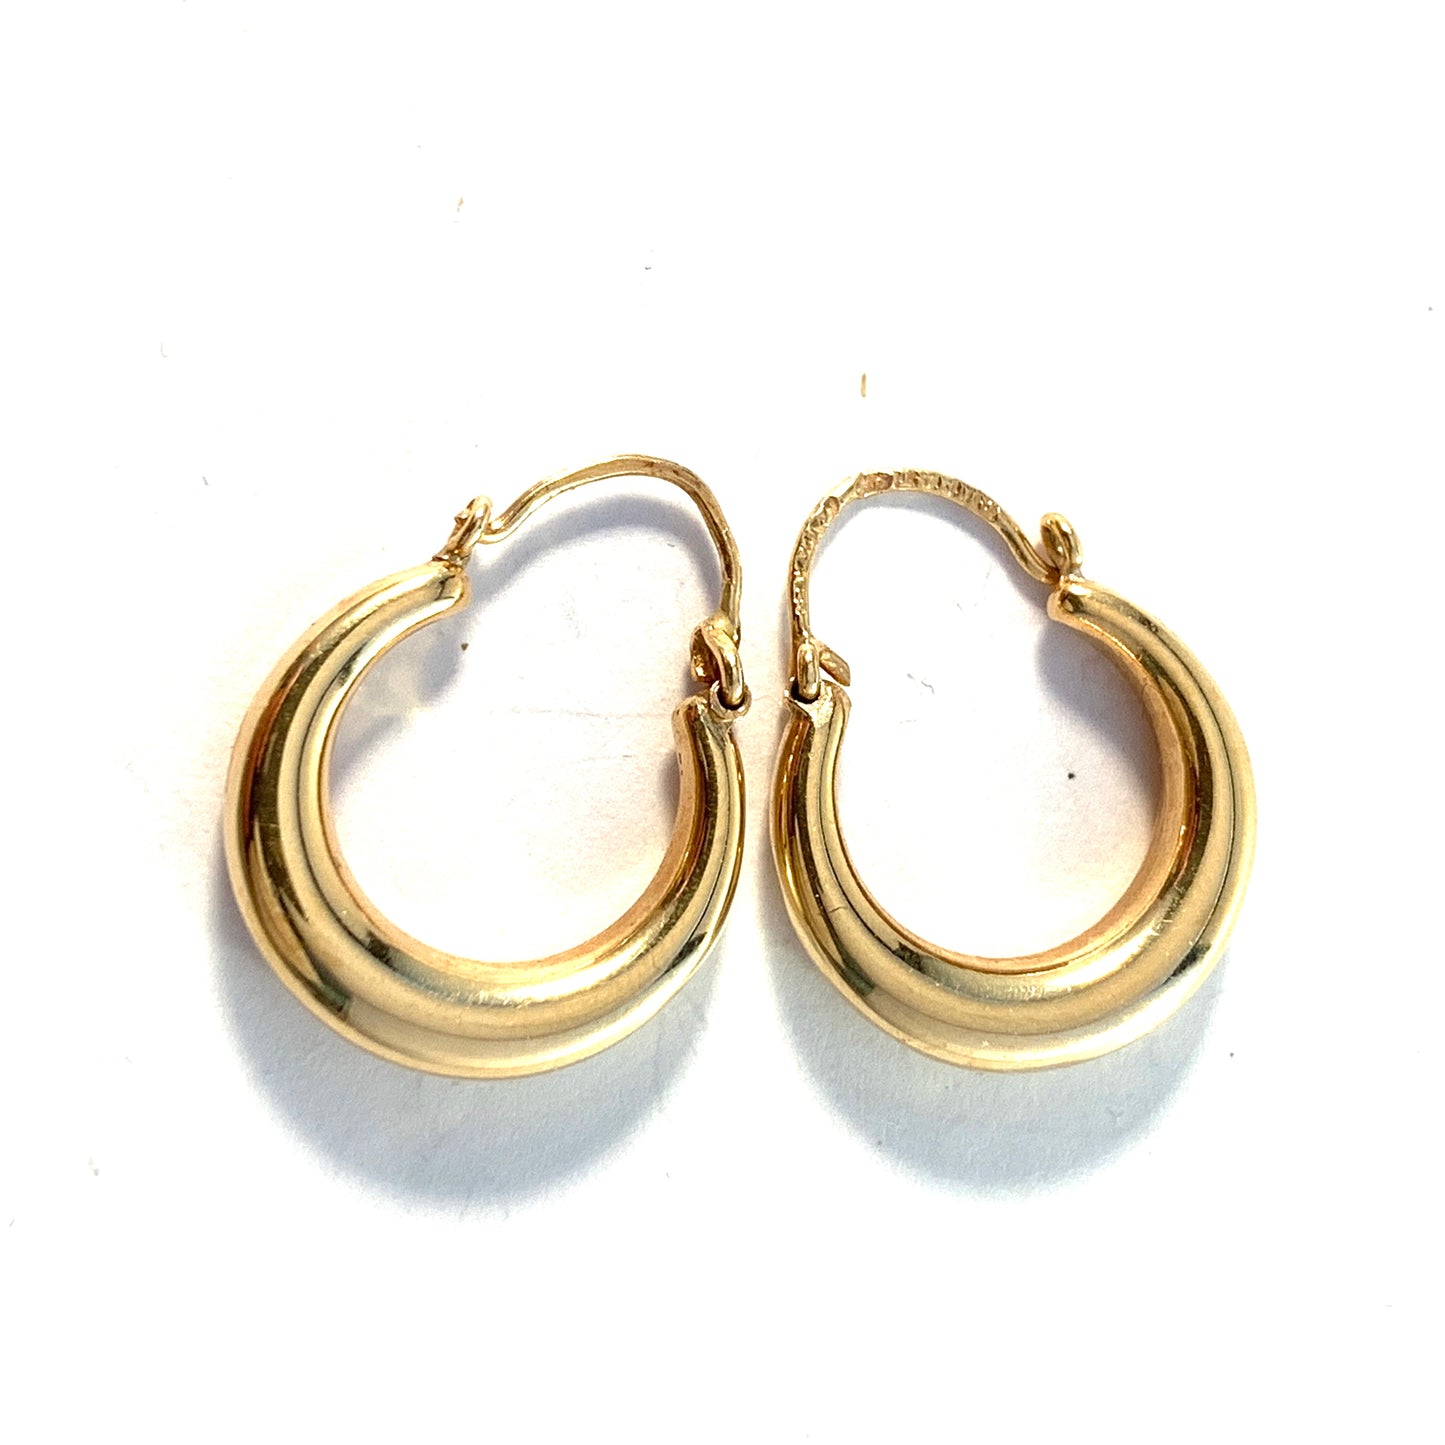 Guldvaruhuset, Stockholm 1962. Vintage 18k Gold Earrings